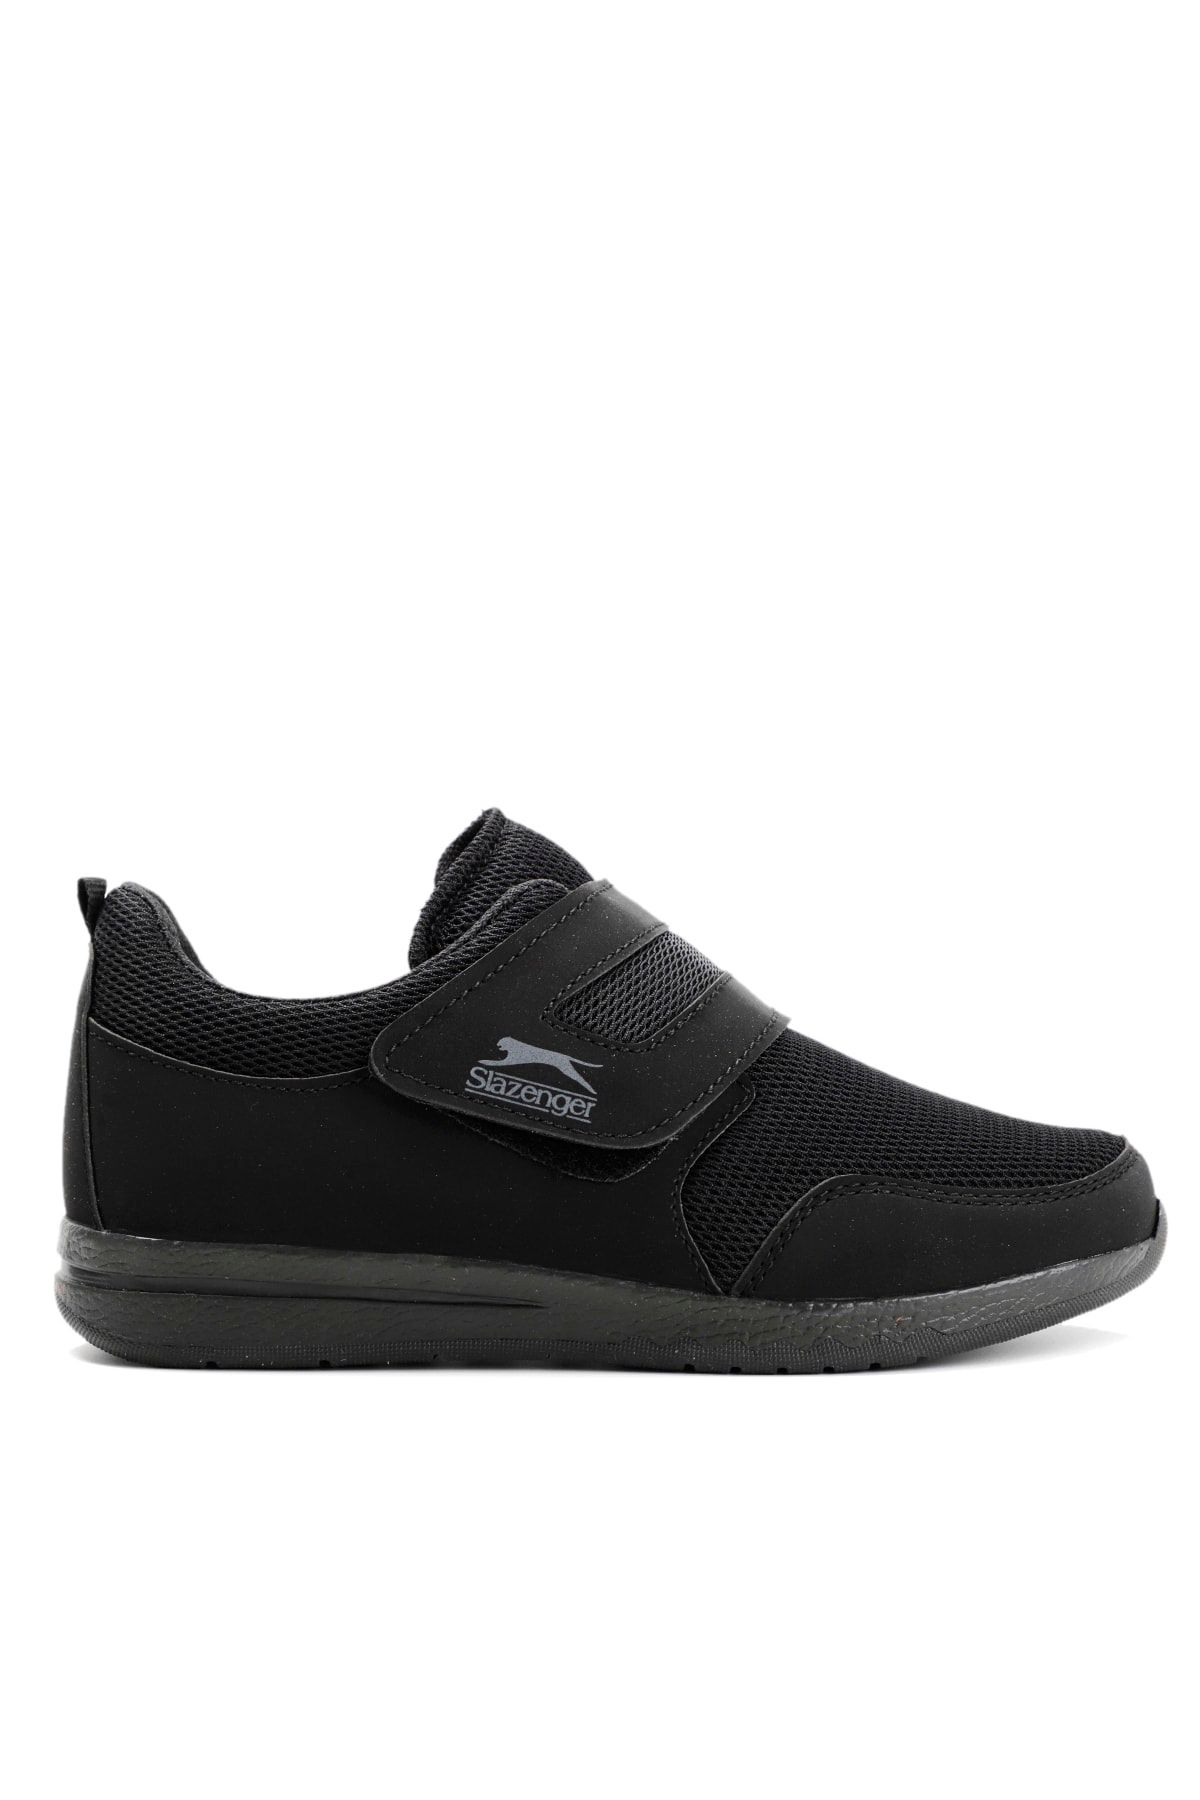 Slazenger Alıson I Sneaker Ayakkabı Siyah Siyah